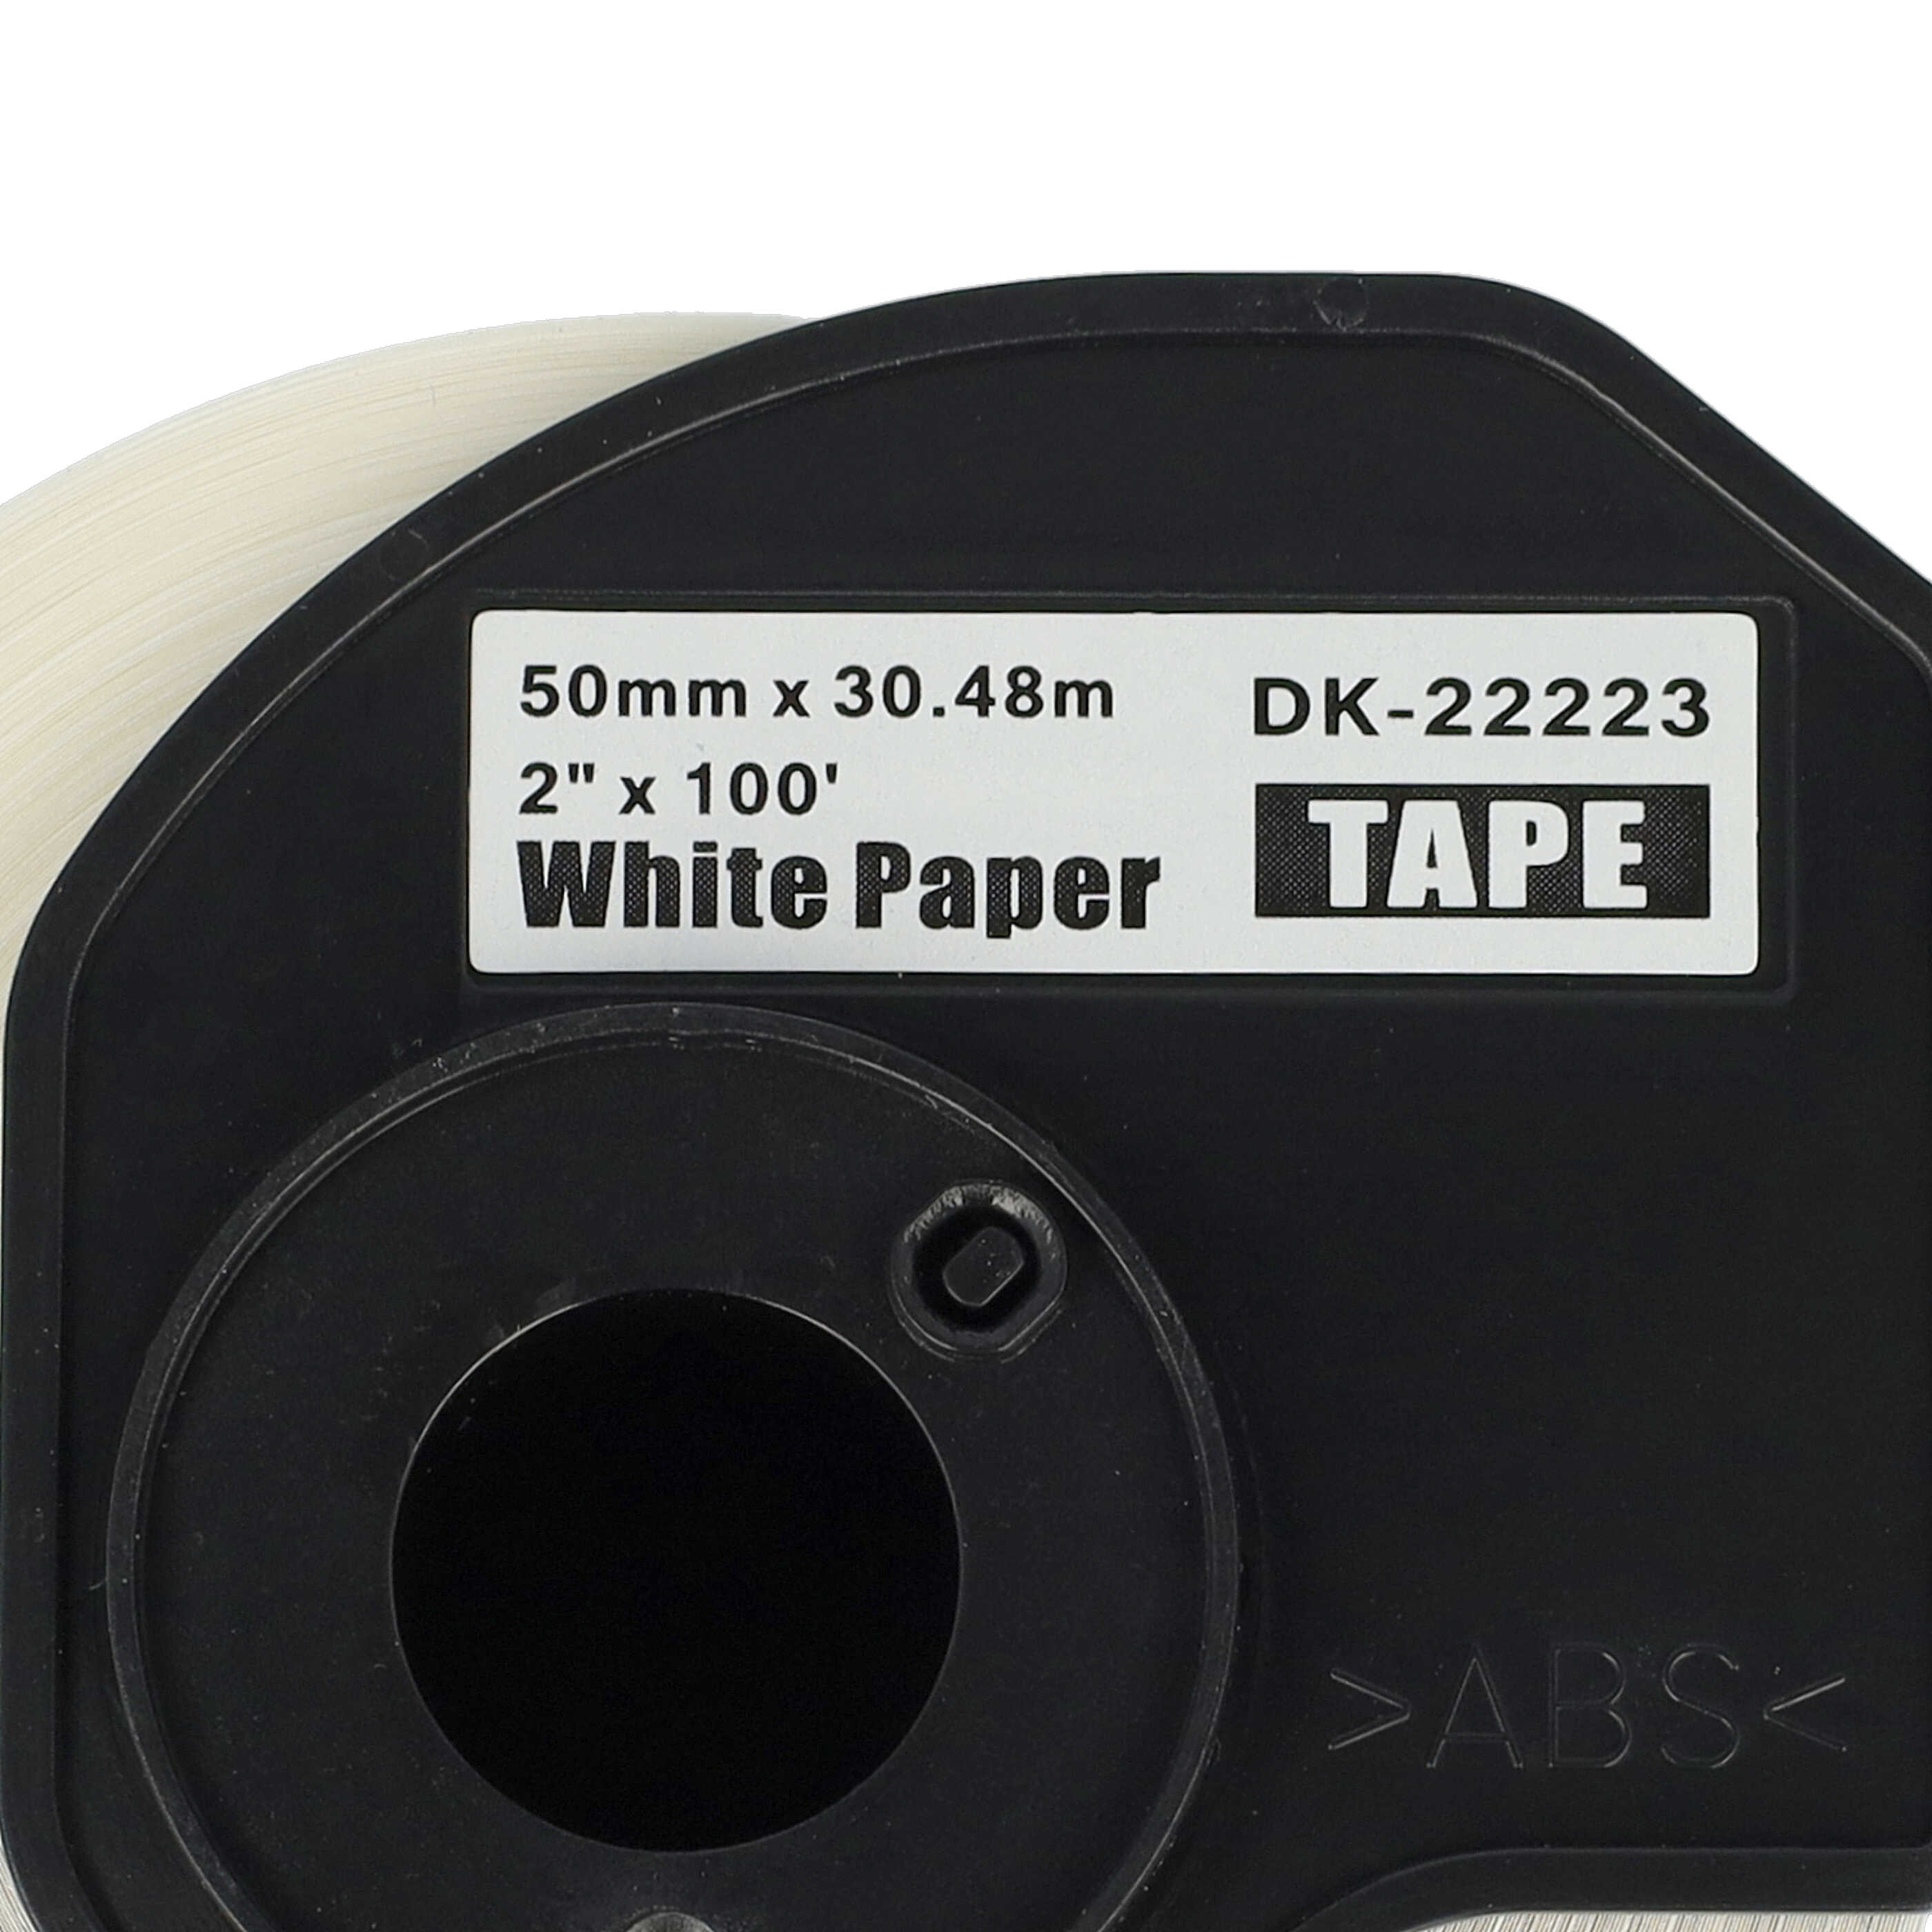 5x Etiketten als Ersatz für Brother DK-22223 Etikettendrucker - Premium 50mm x 30,48m + Halter